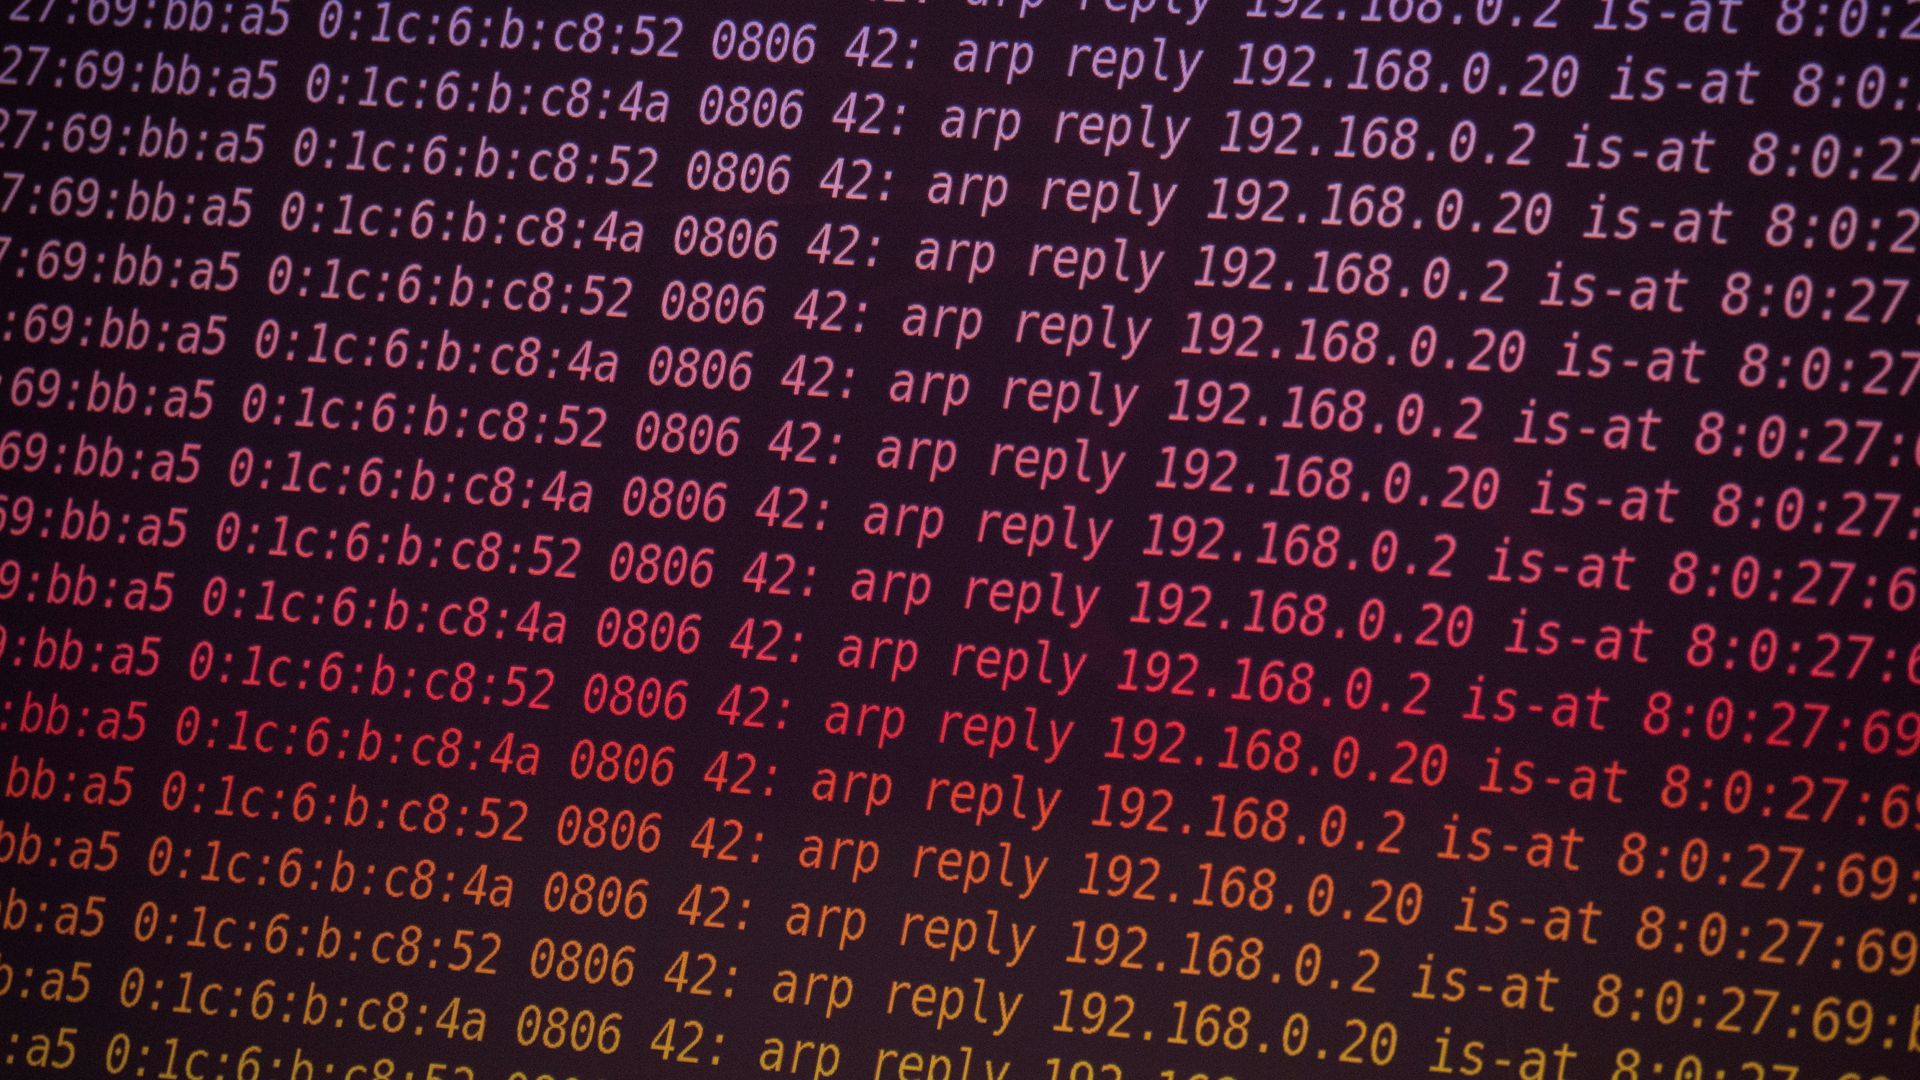 großbritannien: hacker attackieren verteidigungsministerium